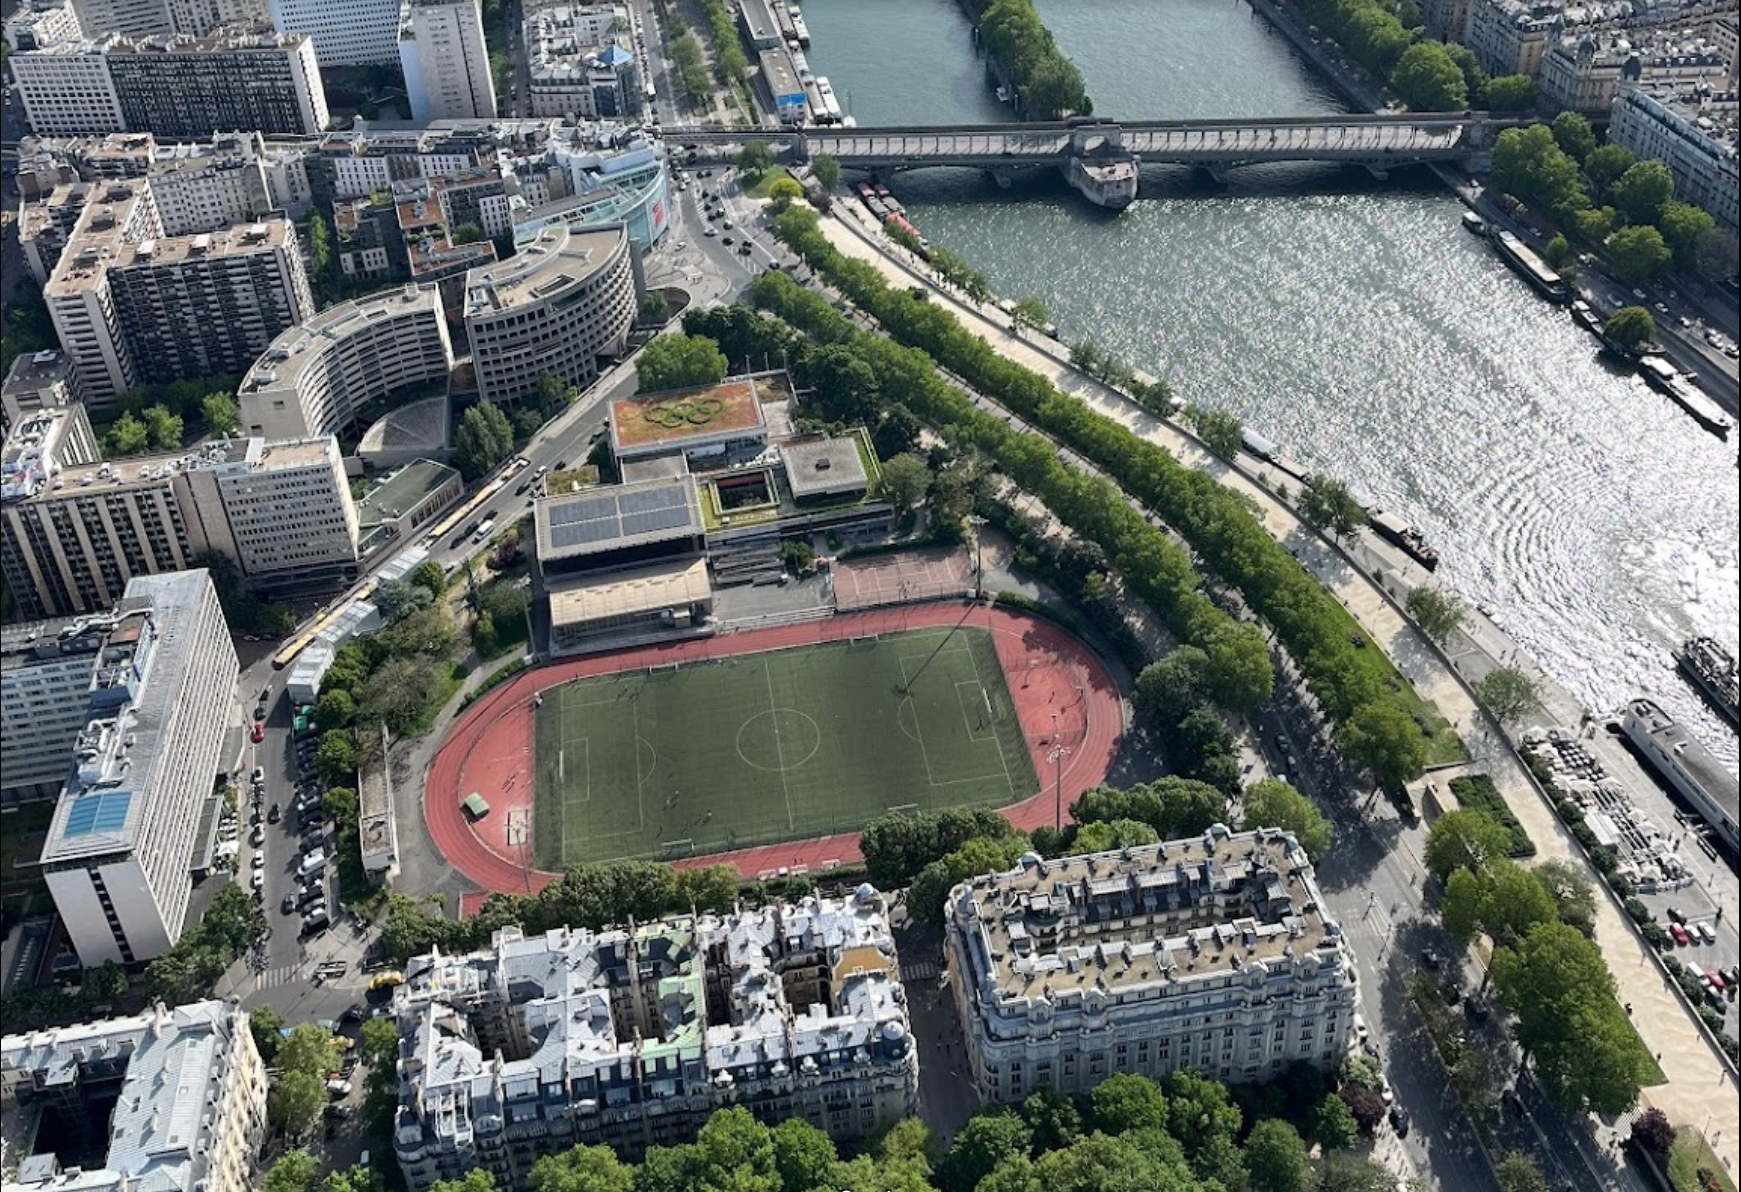 Vue aérienne du centre sportif Emile Anthoine avec son toit végétalisé dessinant les 5 anneaux sportifs à l'occasion des JOP de Paris 2024